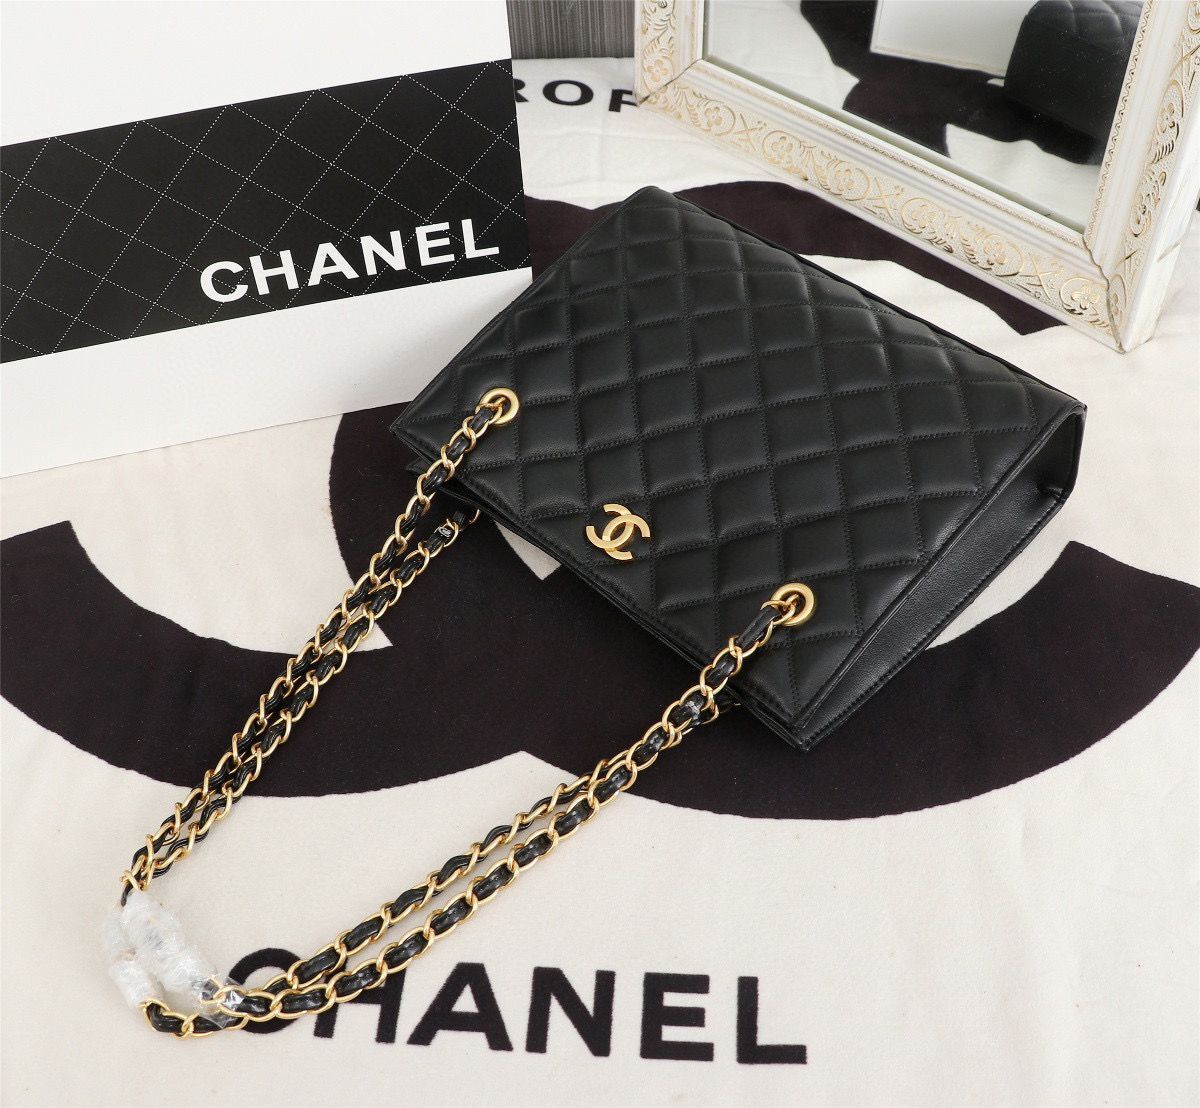 Chanel Original Original Leather Shopping Bag A05360 Black